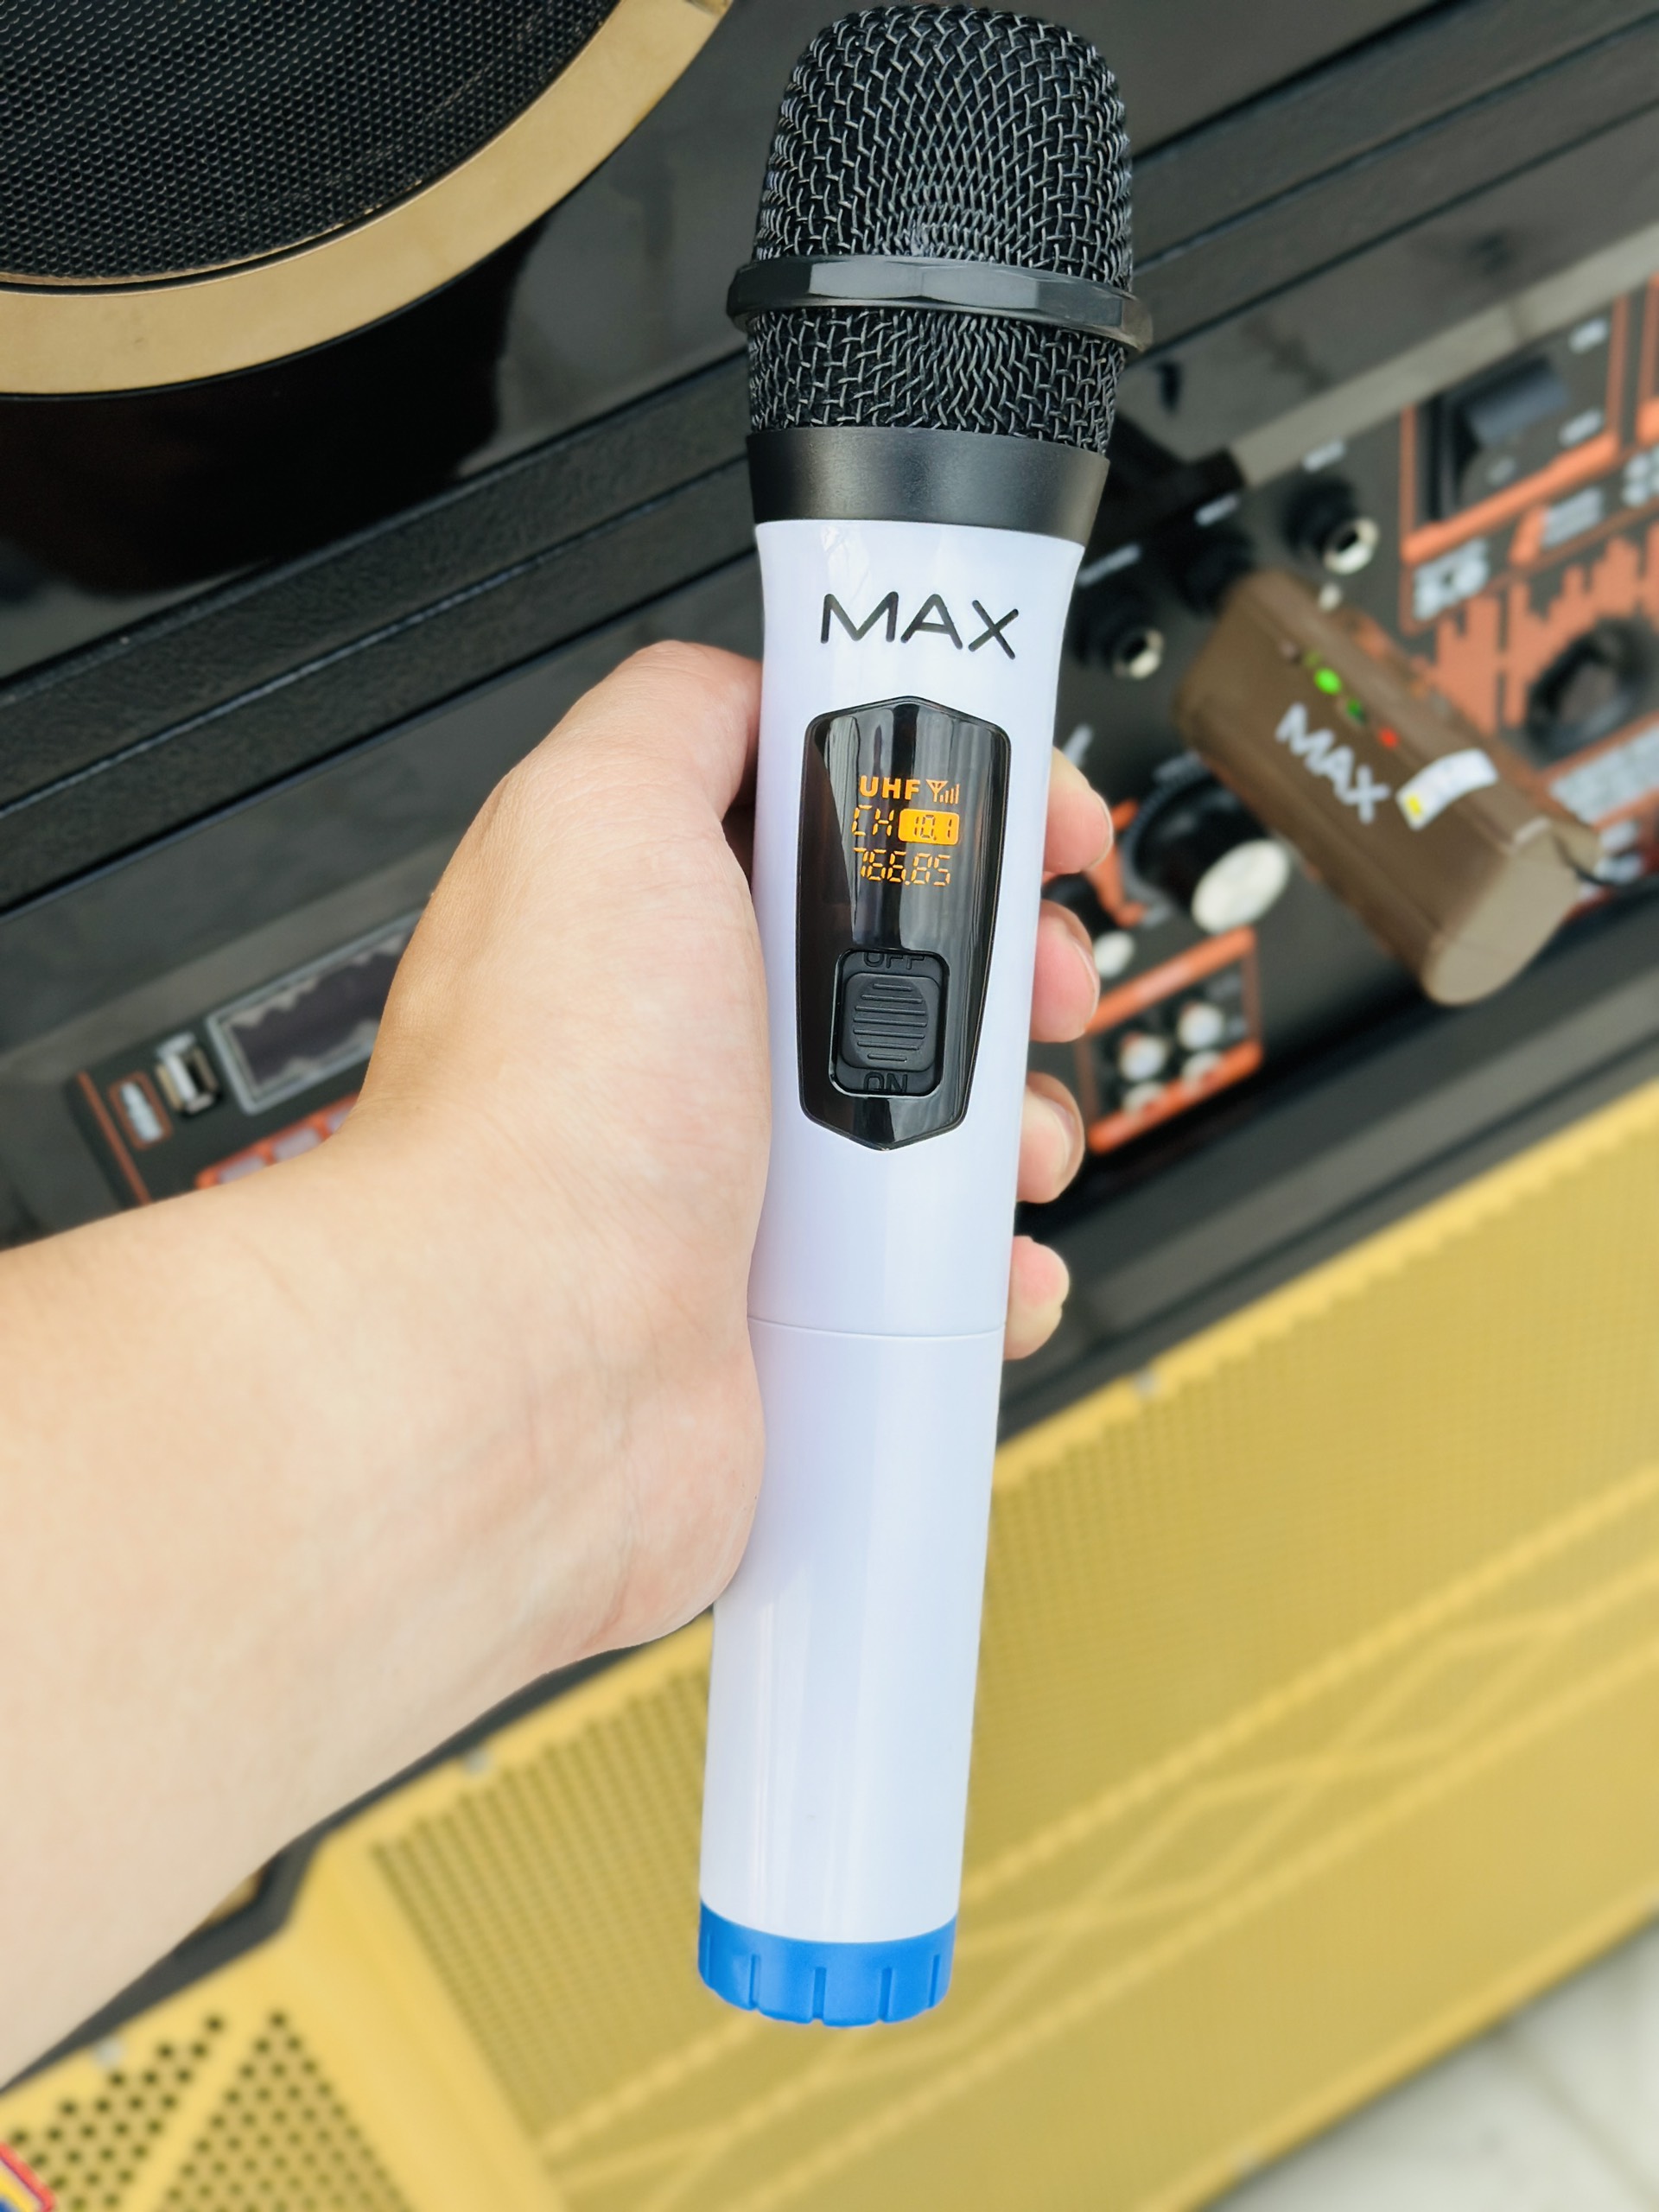 Micro không dây đa năng Max 21 - Micro không dây giá tốt, sử dụng cho mọi loại thiết bị âm thanh - Micro dành cho loa kéo, loa bluetooth, amply - Màn hình Led hiển thị thông số - Âm thanh cực hay, giá cực rẻ